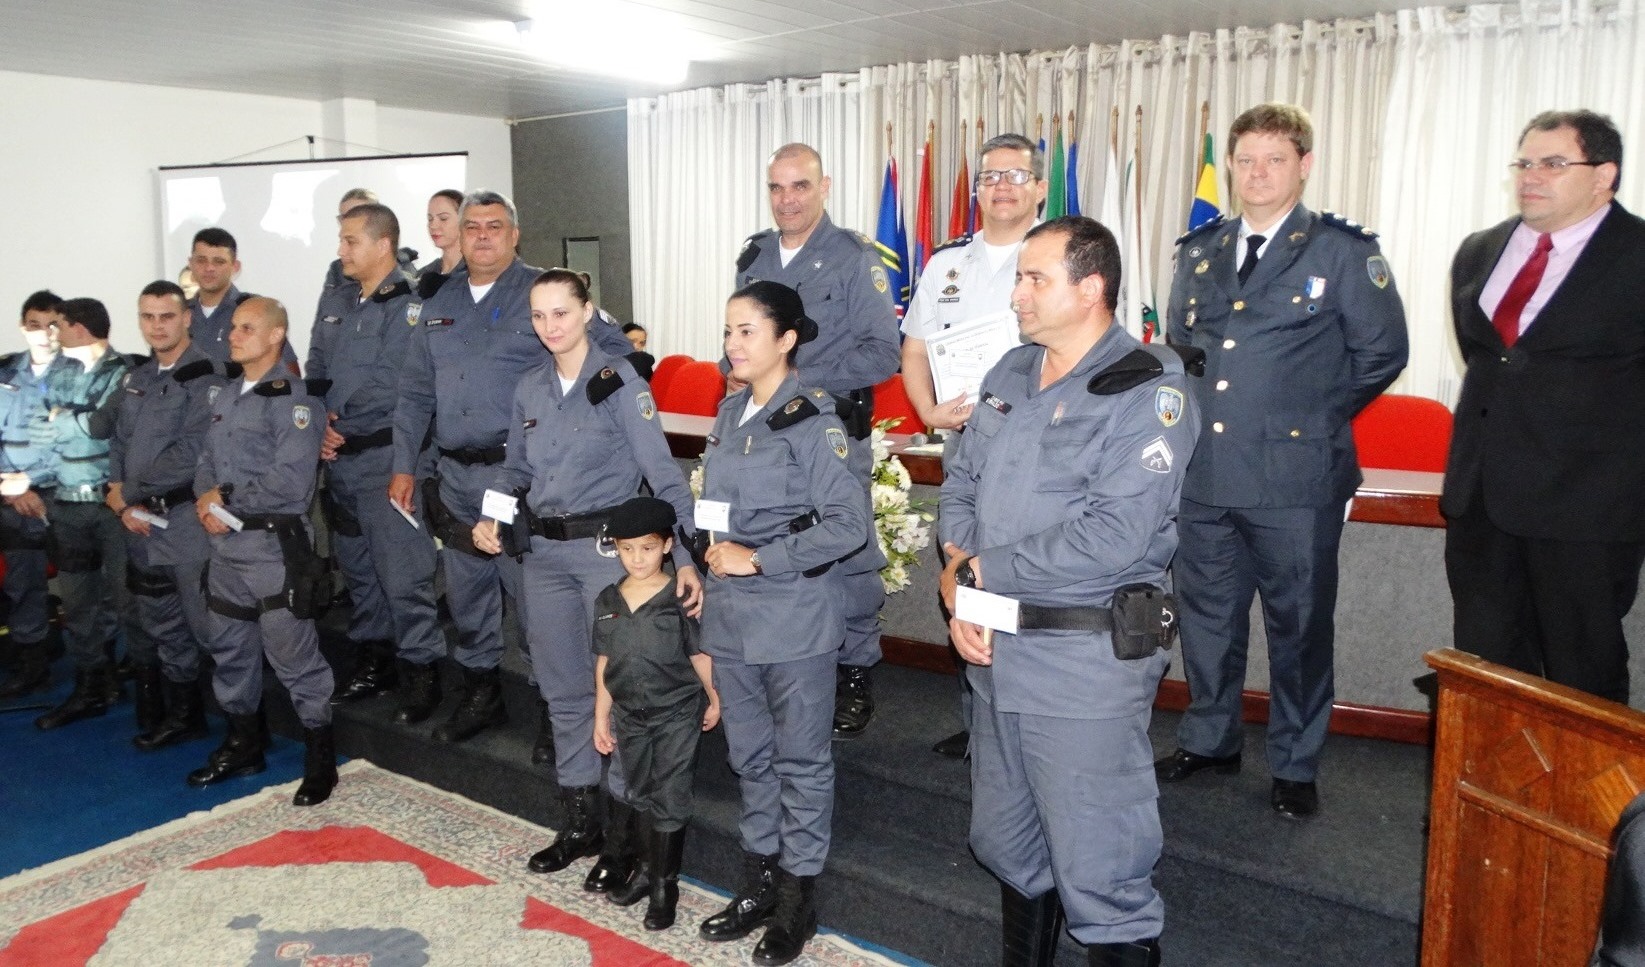 6ª Cia. da Polícia Militar recebe homenagem da Câmara